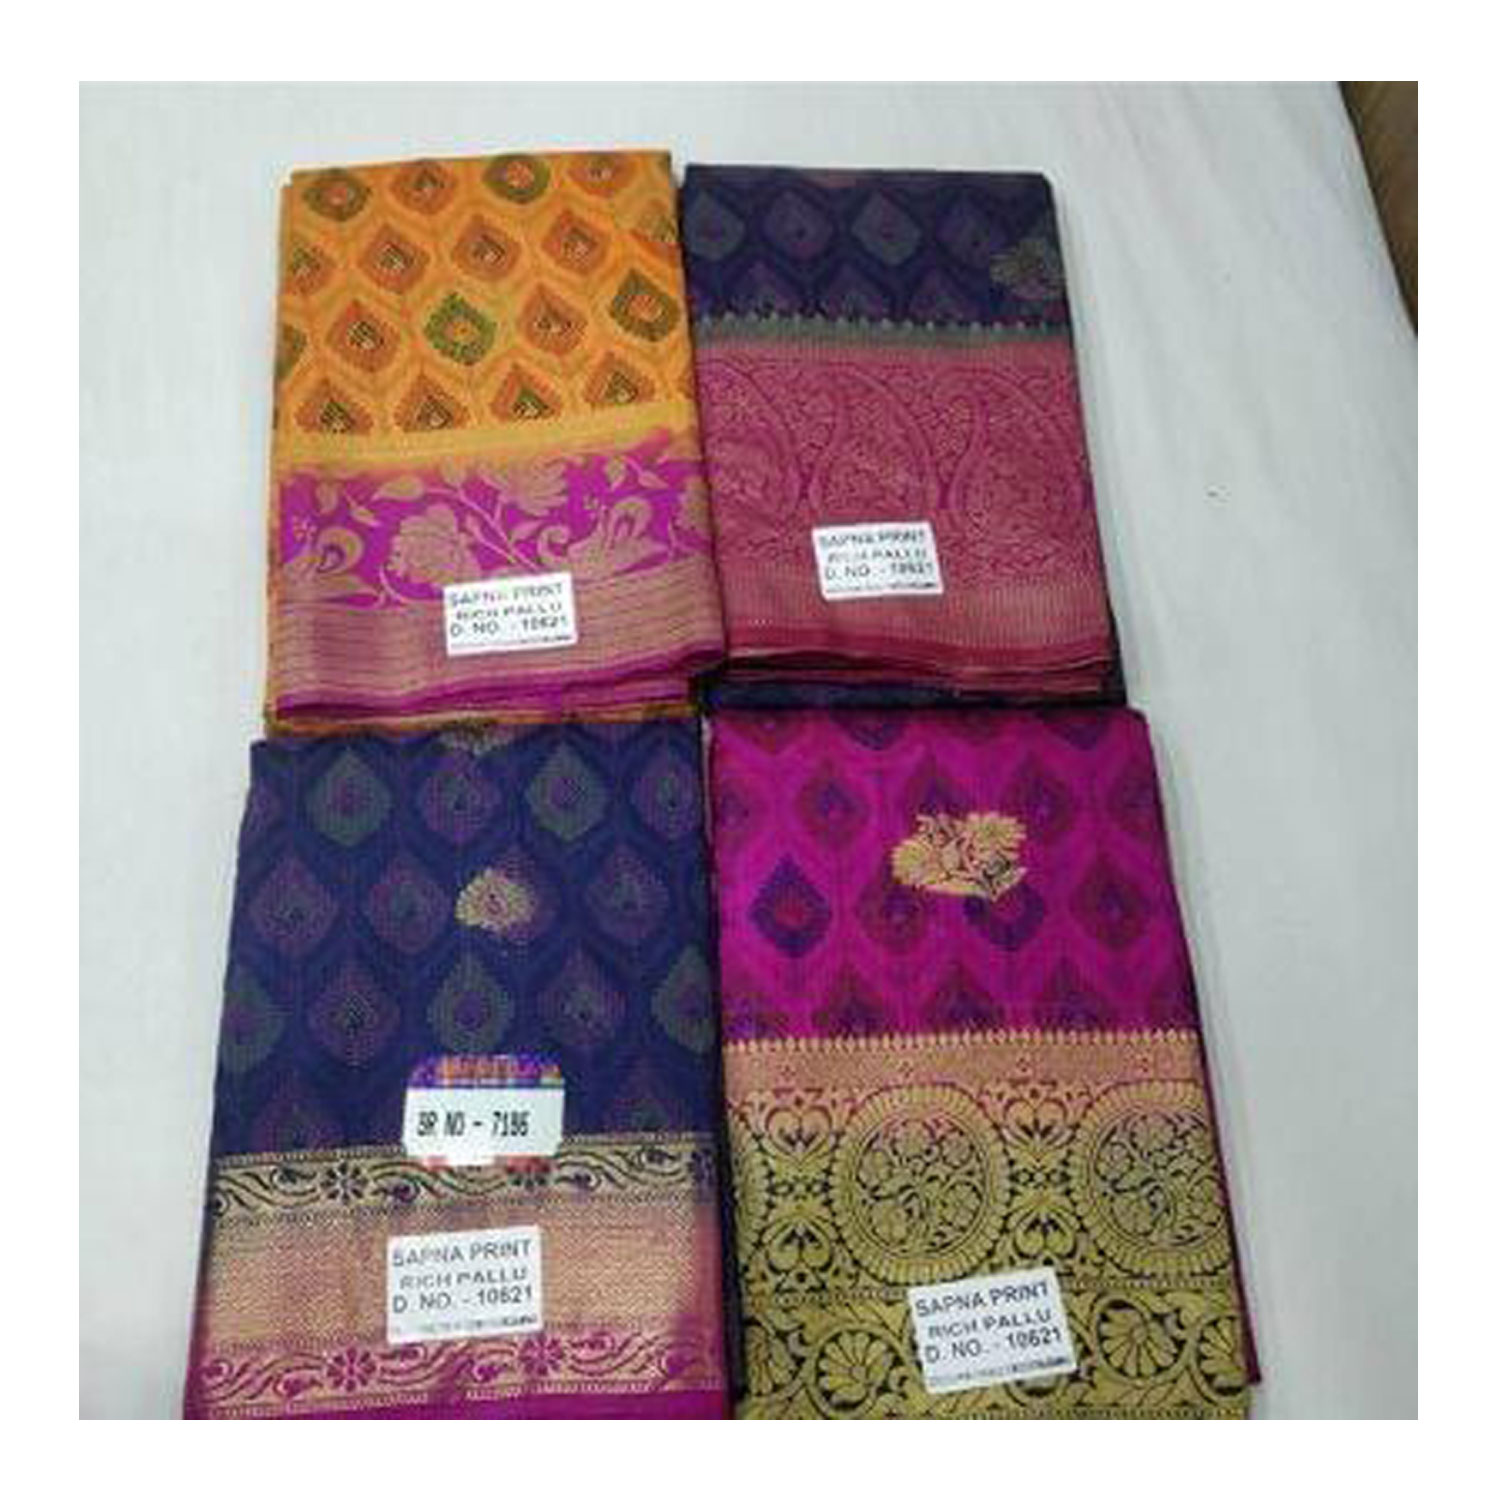  Women's Silk Cotton Weaving Work Sapna Print Saree |D.NO - W-7186| Pack of 4